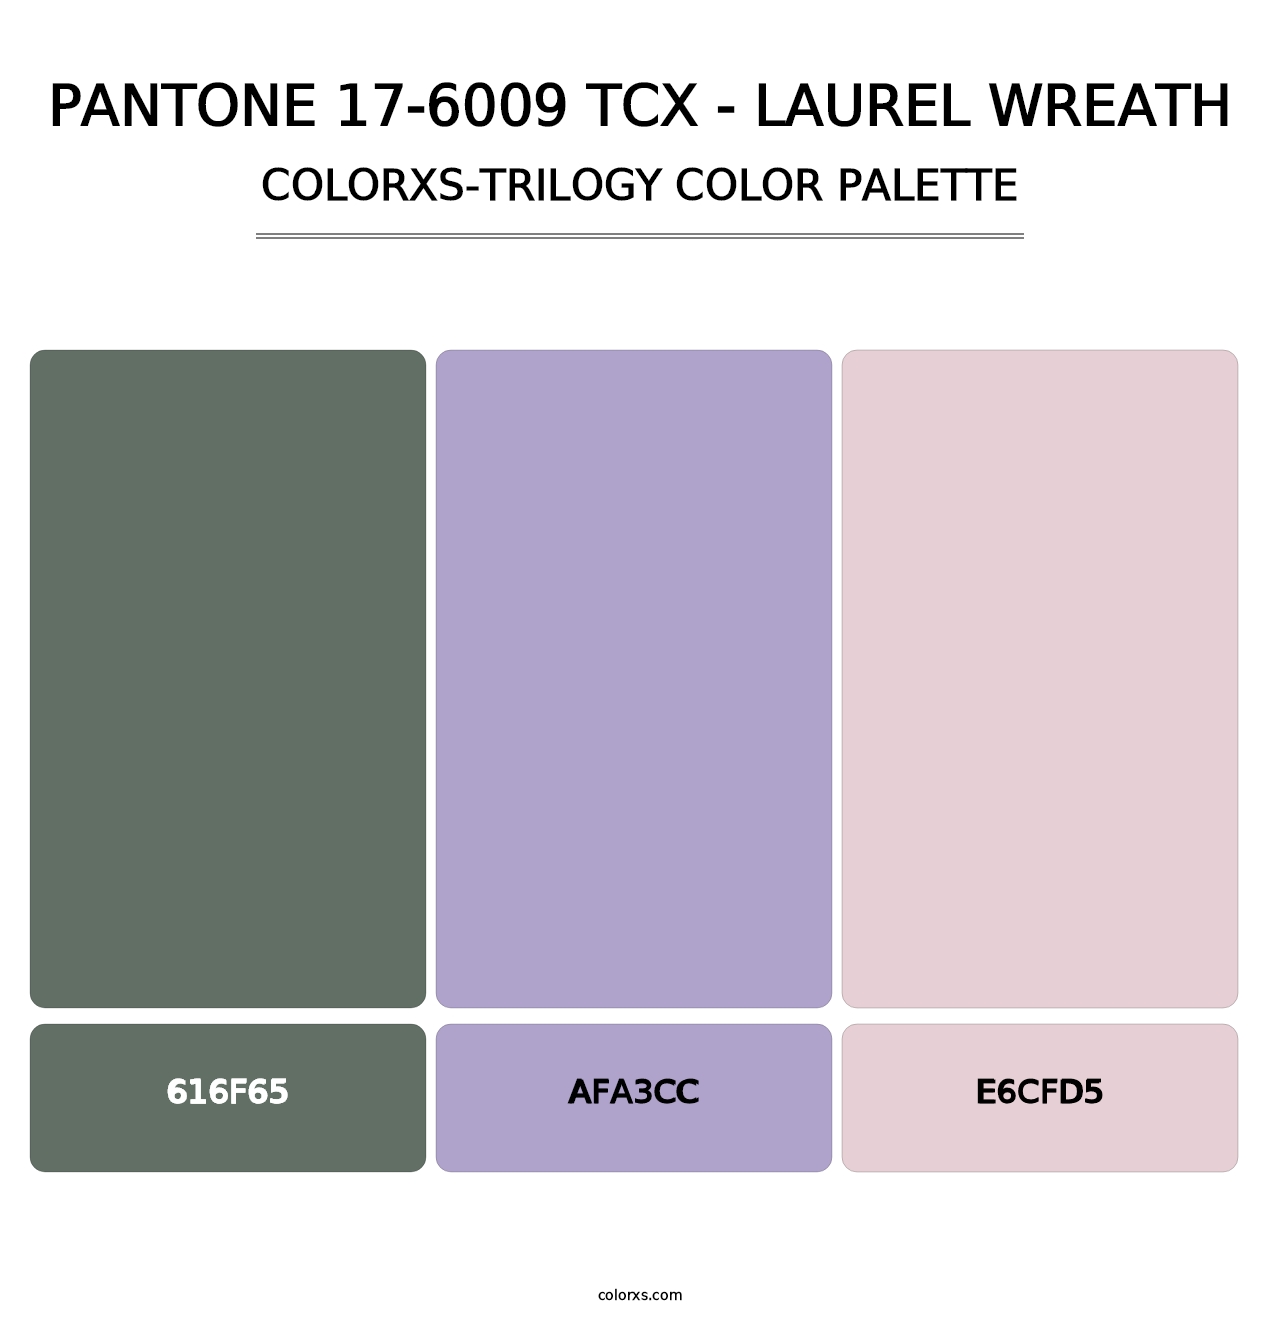 PANTONE 17-6009 TCX - Laurel Wreath - Colorxs Trilogy Palette